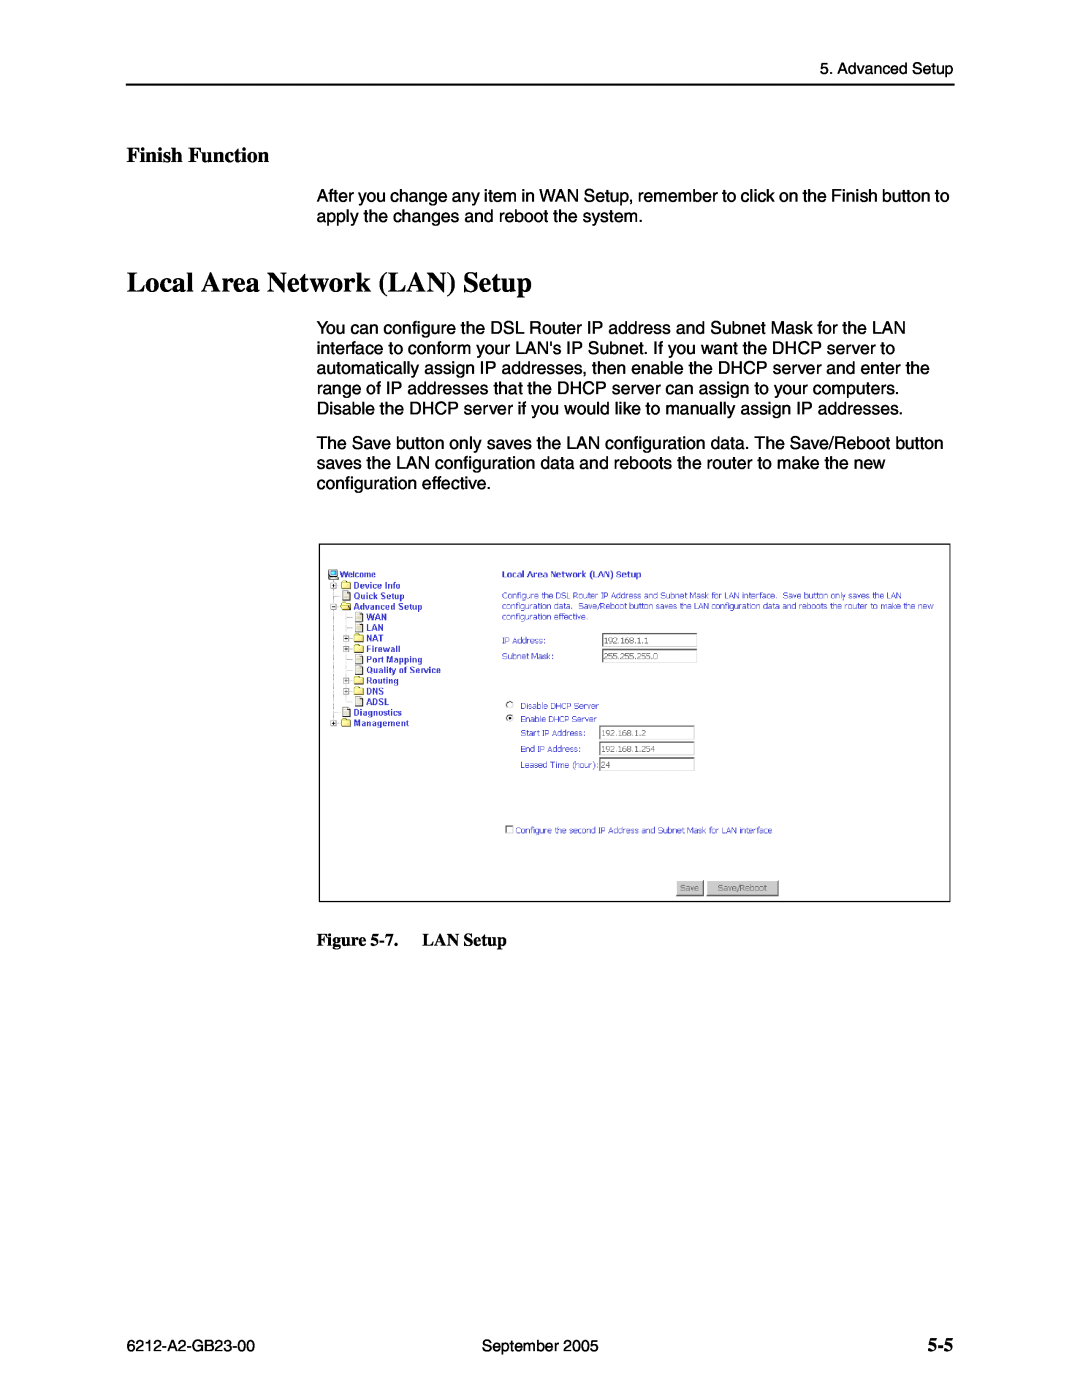 Paradyne 6212-I1 manual Local Area Network LAN Setup, Finish Function, 7. LAN Setup 